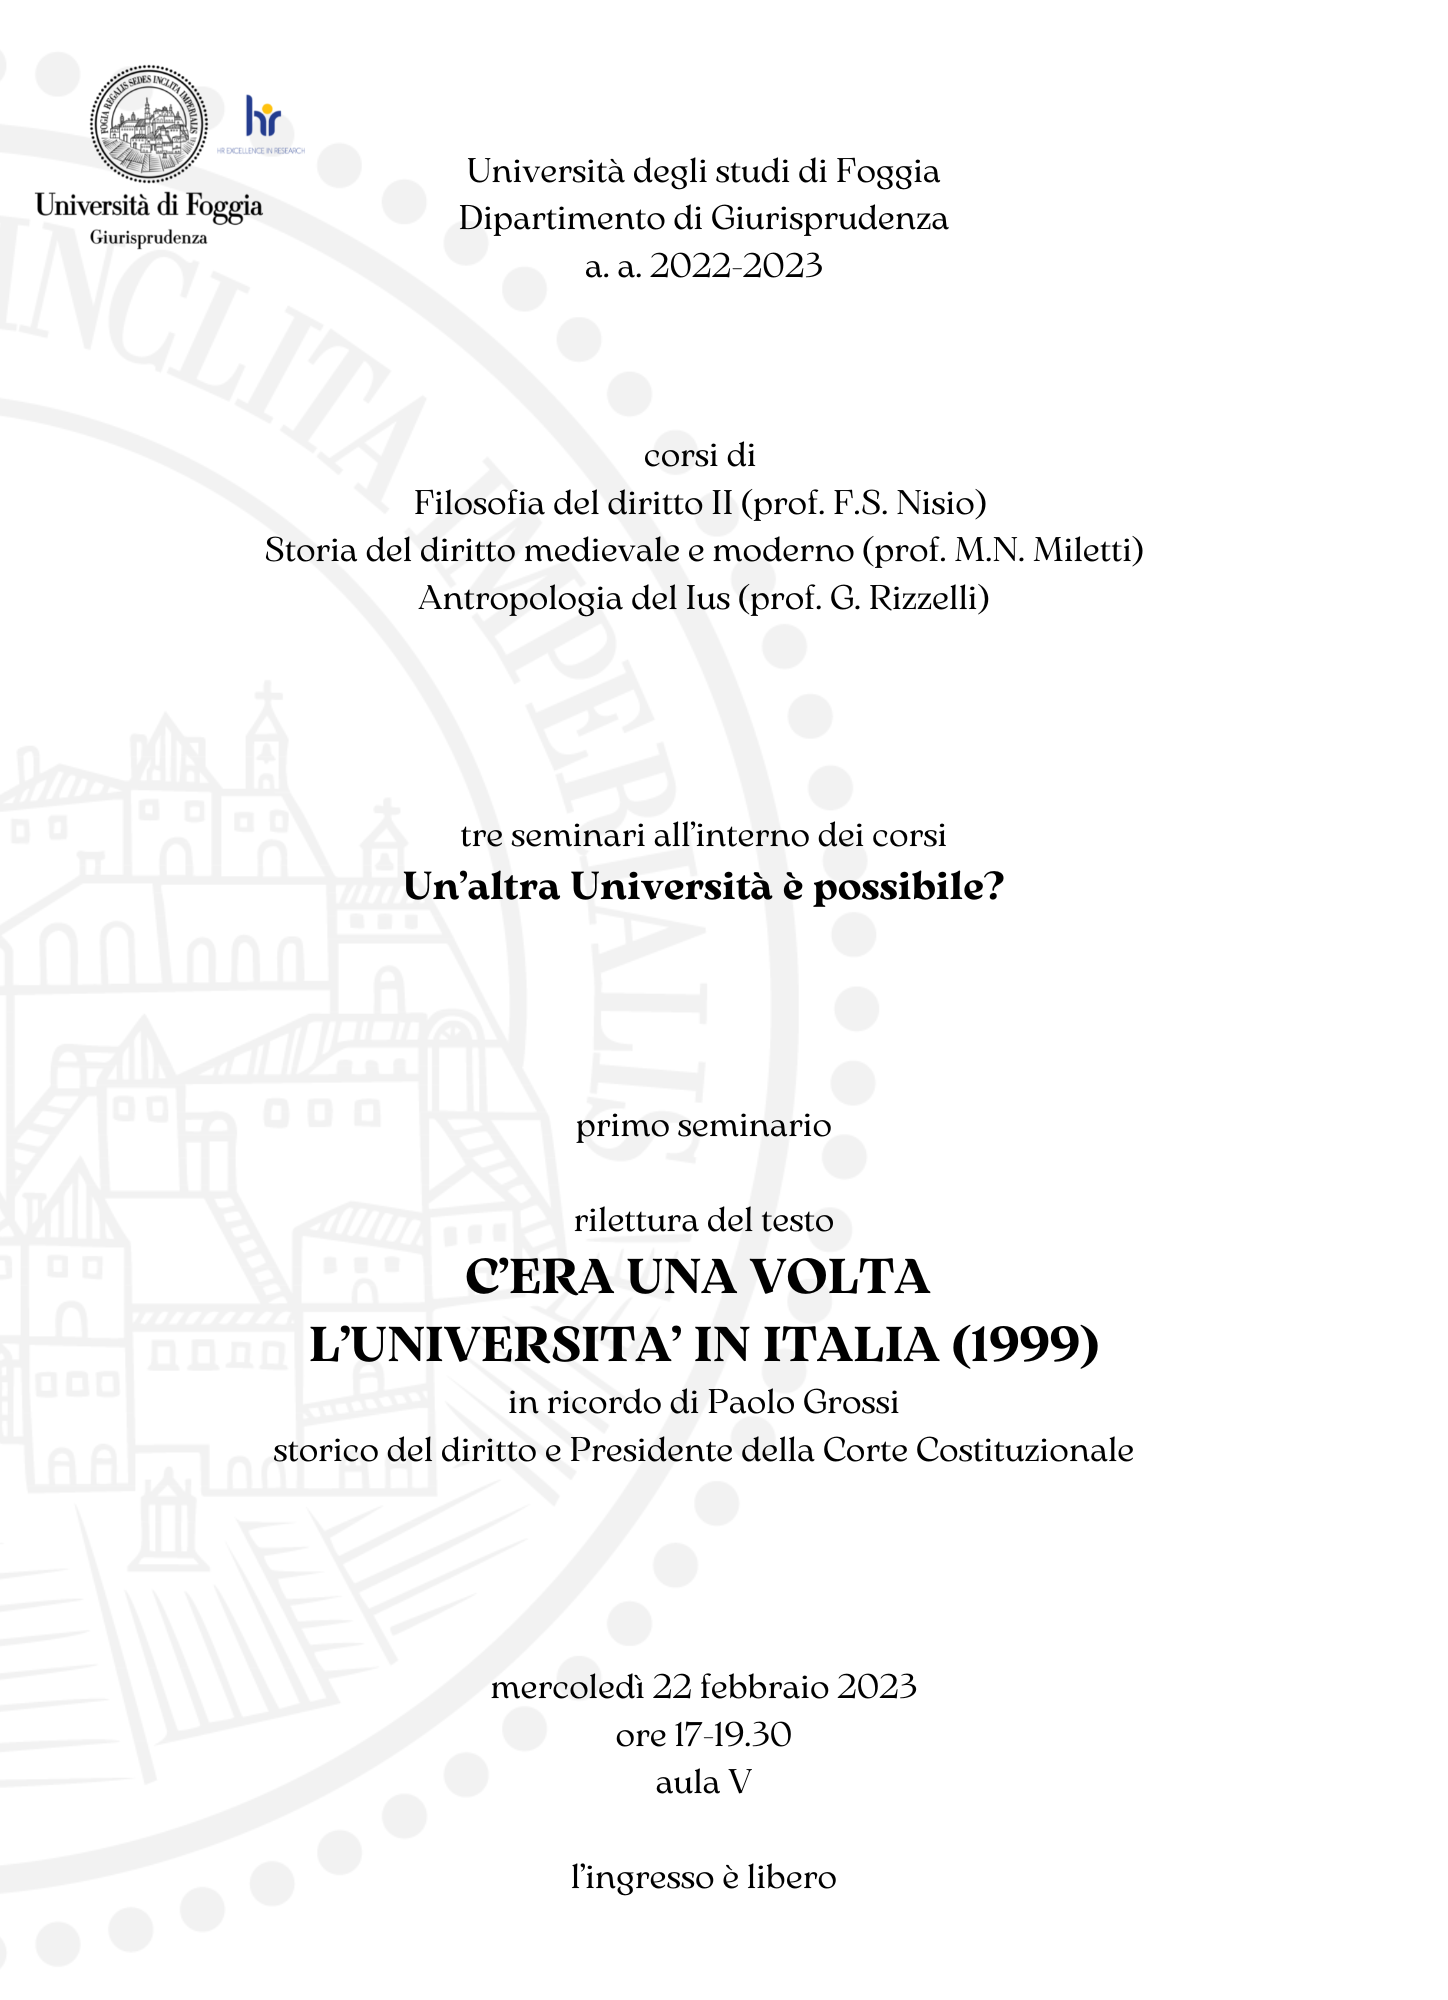 (Italiano) 22 febbraio 2023 – Un’altra Università è possibile?